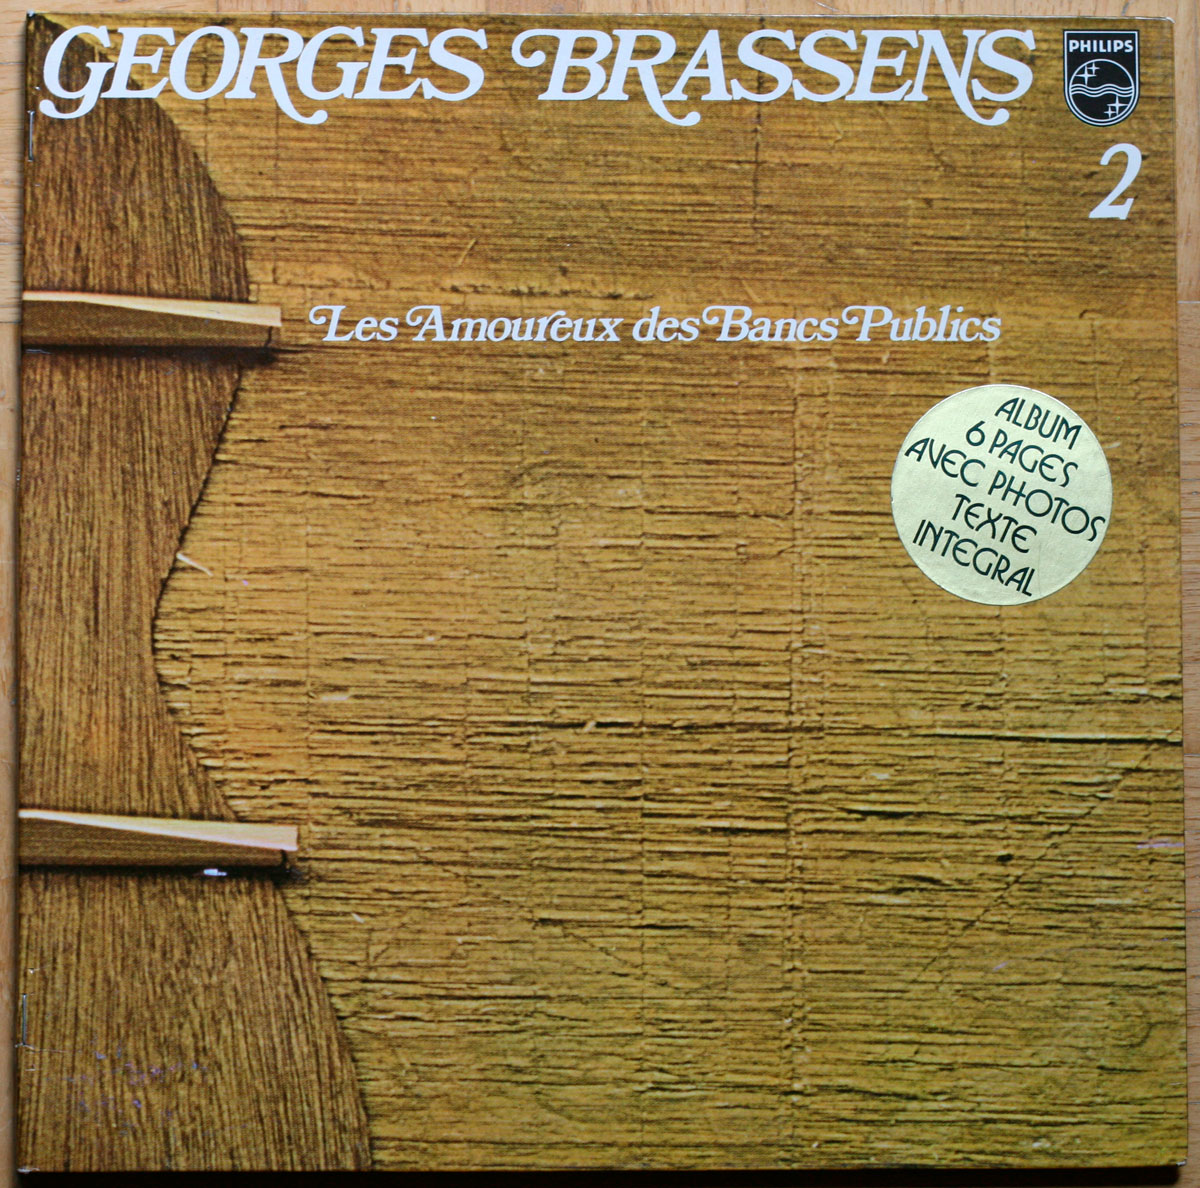 Georges Brassens • Volume n° 02 • Les amoureux des bancs publics • Philips 6499 777